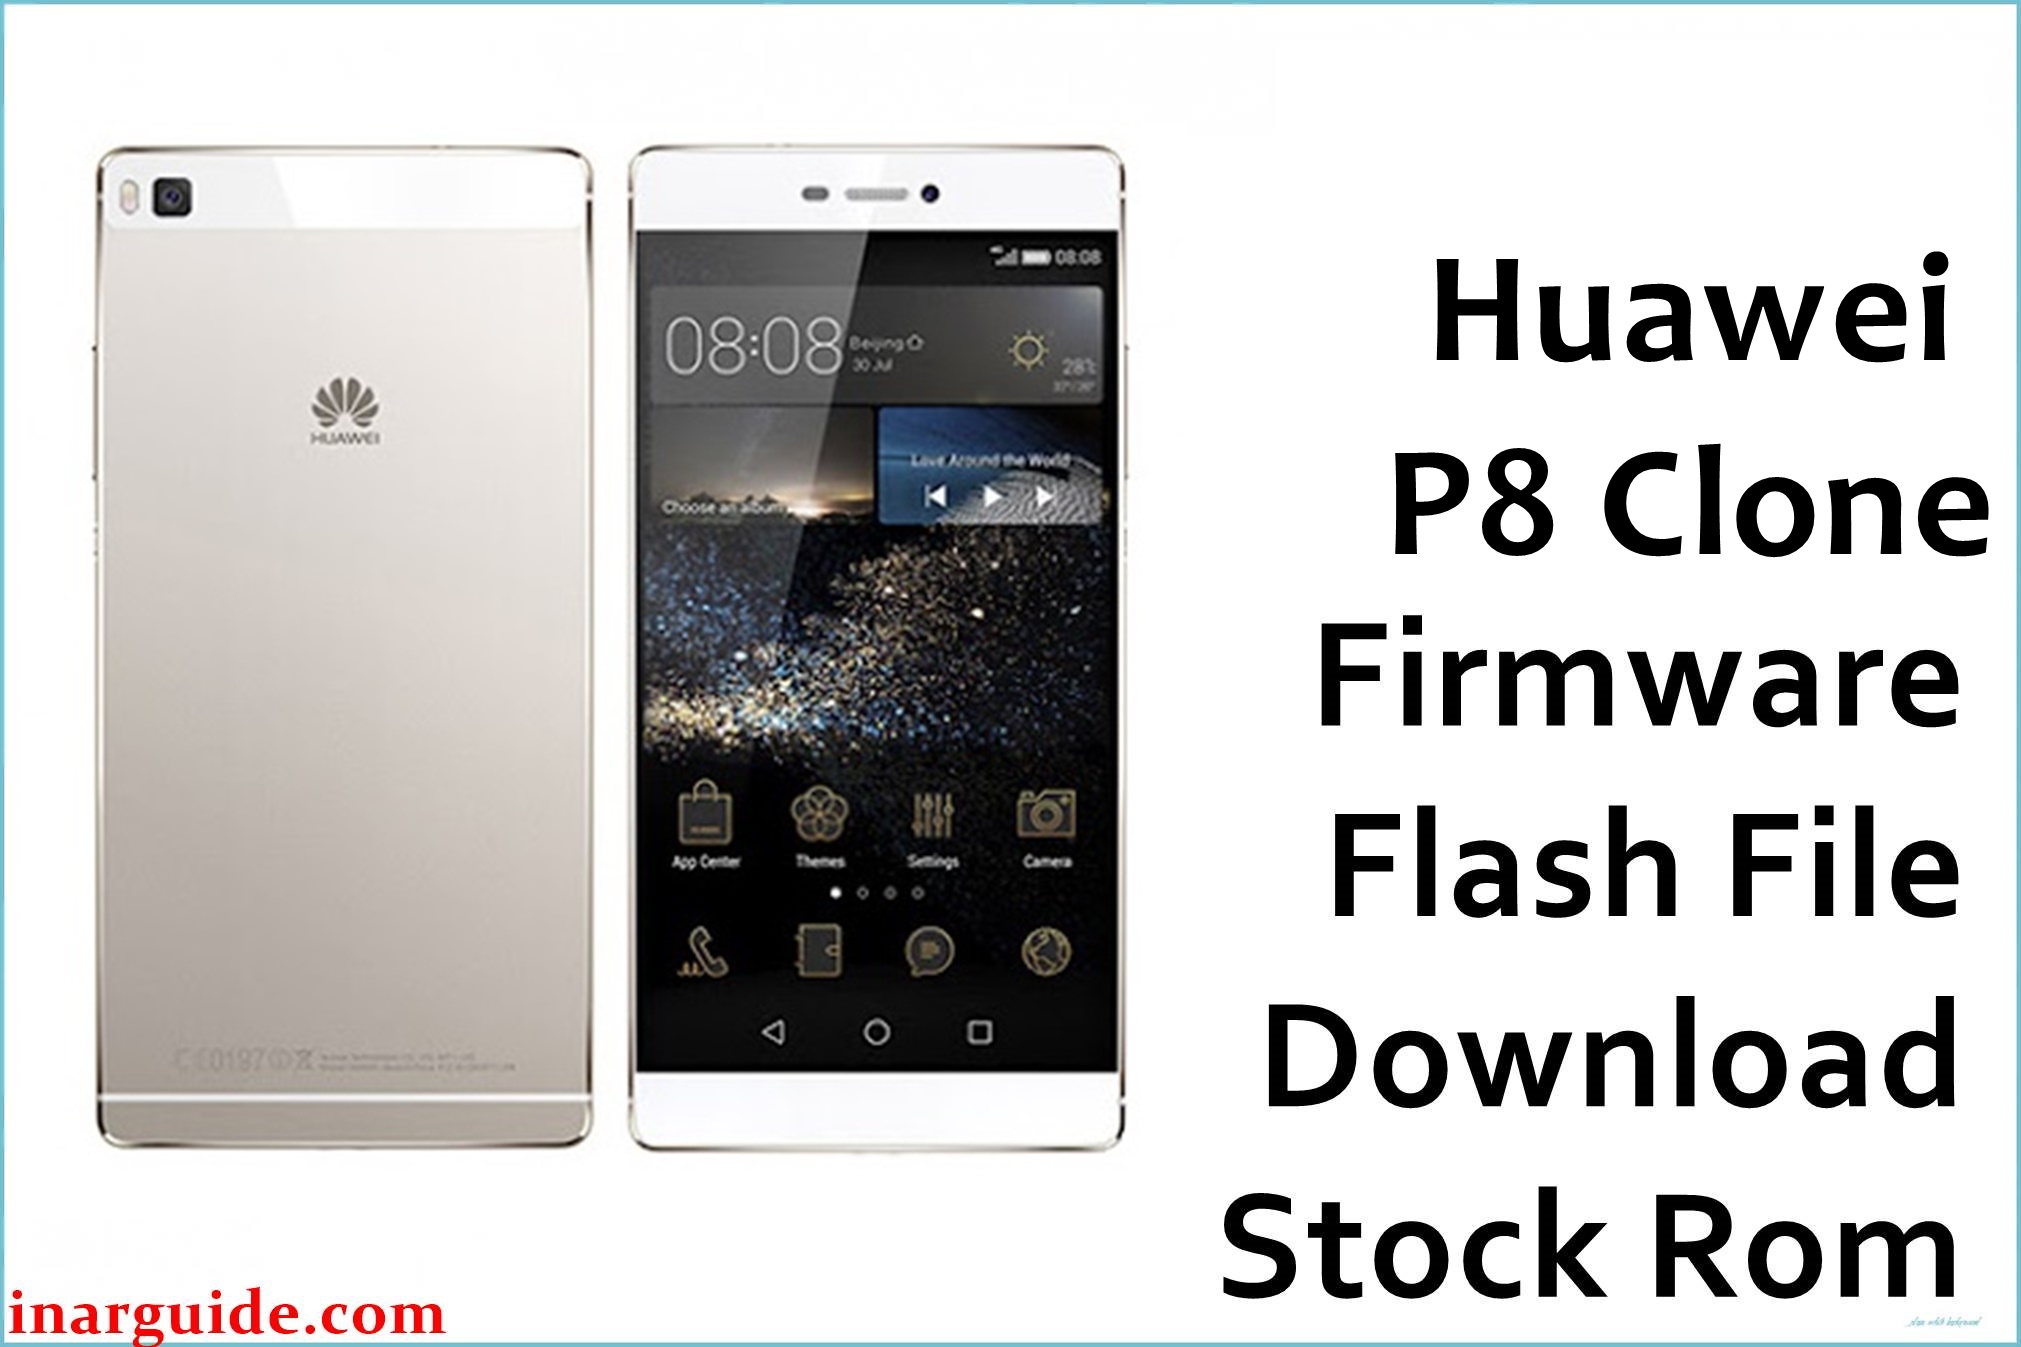 Huawei P8 Clone